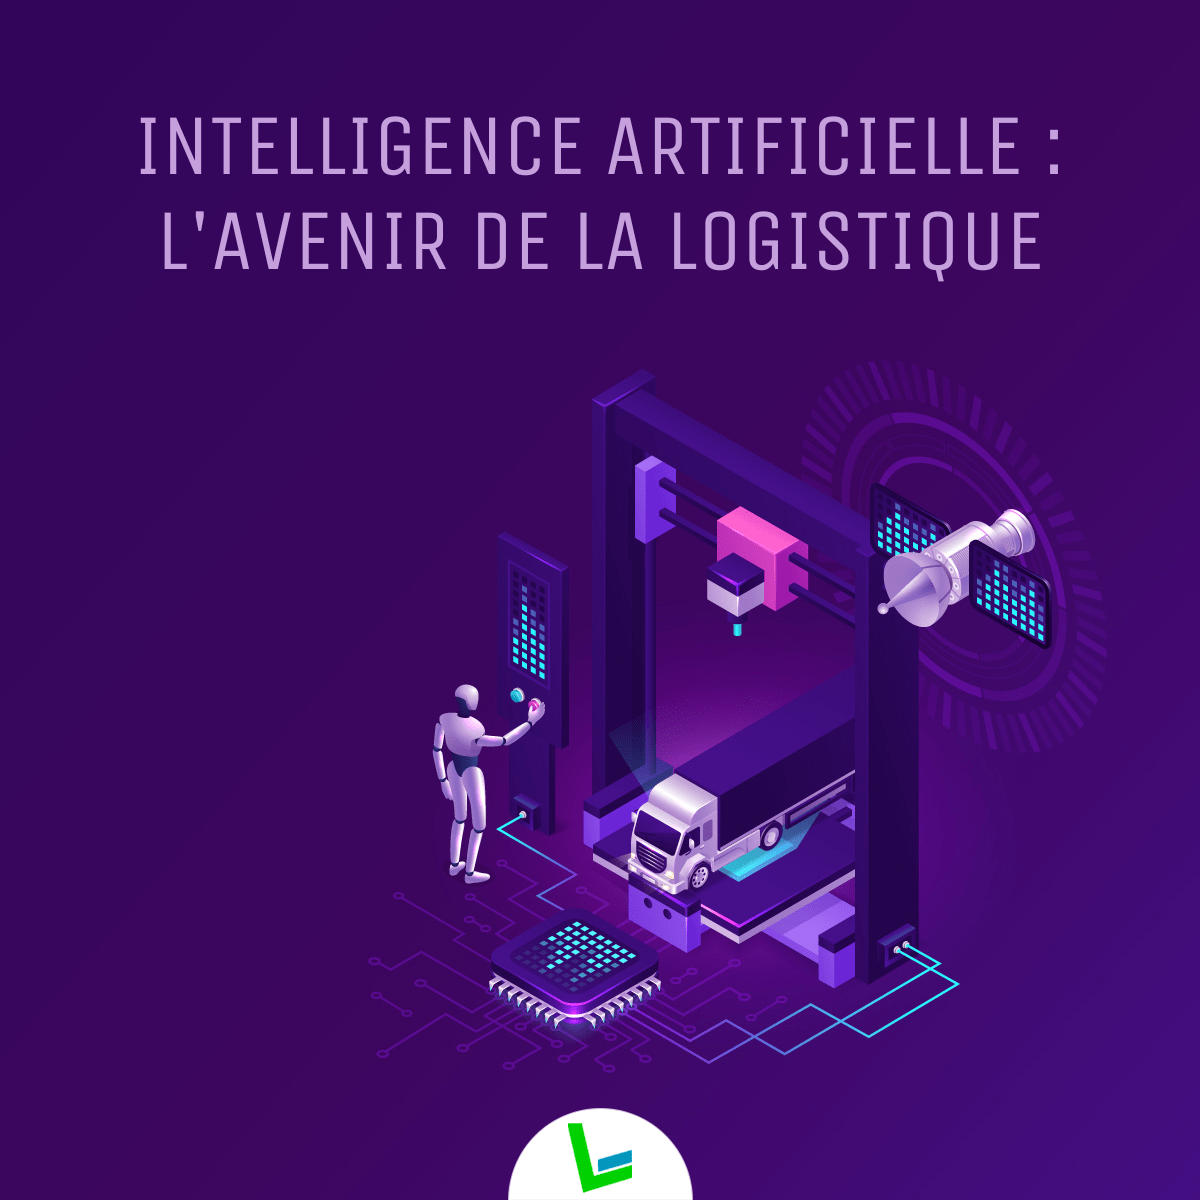 Intelligence artificielle : l'avenir de la logistique